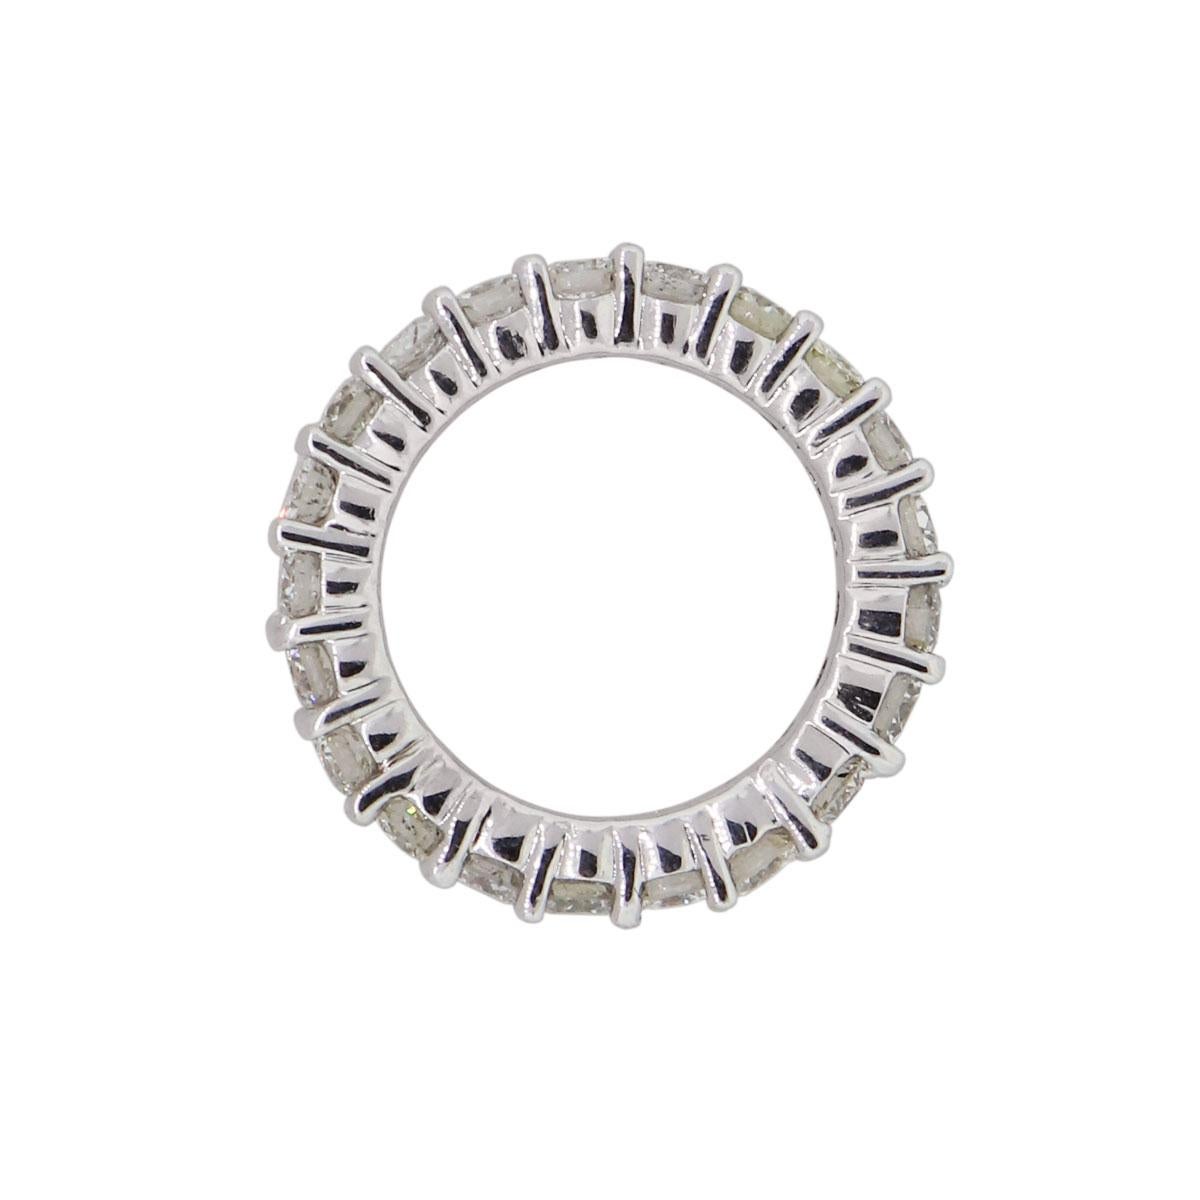 MATERIAL : Or blanc 14k
Détails des diamants : Environ 2,25ctw de diamants ronds. Les diamants sont de couleur G/H et de pureté VS.
Taille de l'anneau : 4.75
Mesures de l'anneau : 0.91″ x 0.12″ x 0.91″
Poids total : 4.7g (3dwt)
Détails